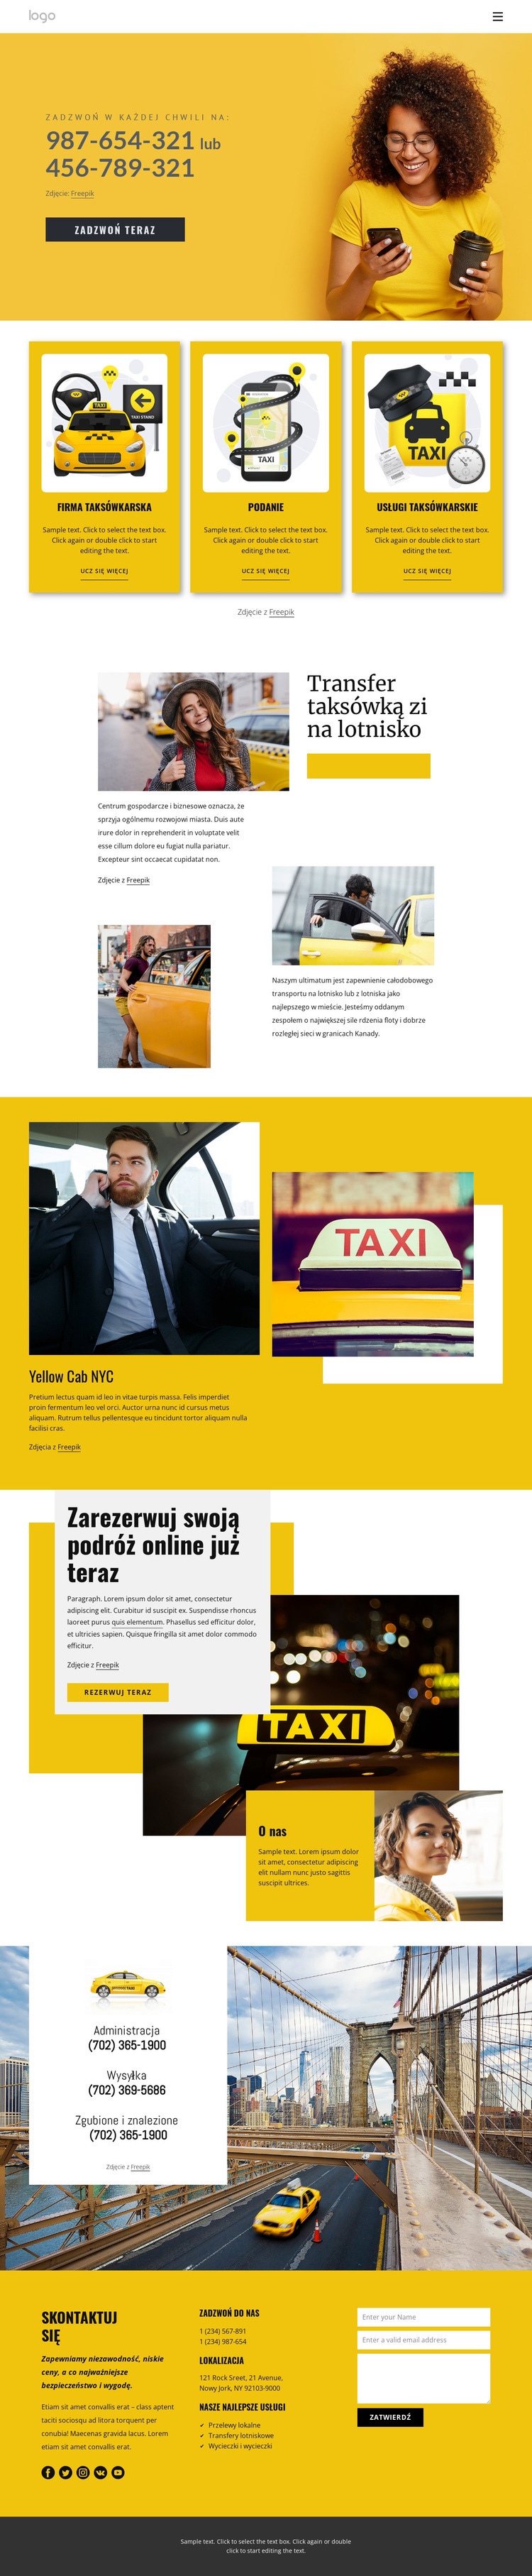 Jakość usług taksówkowych Makieta strony internetowej